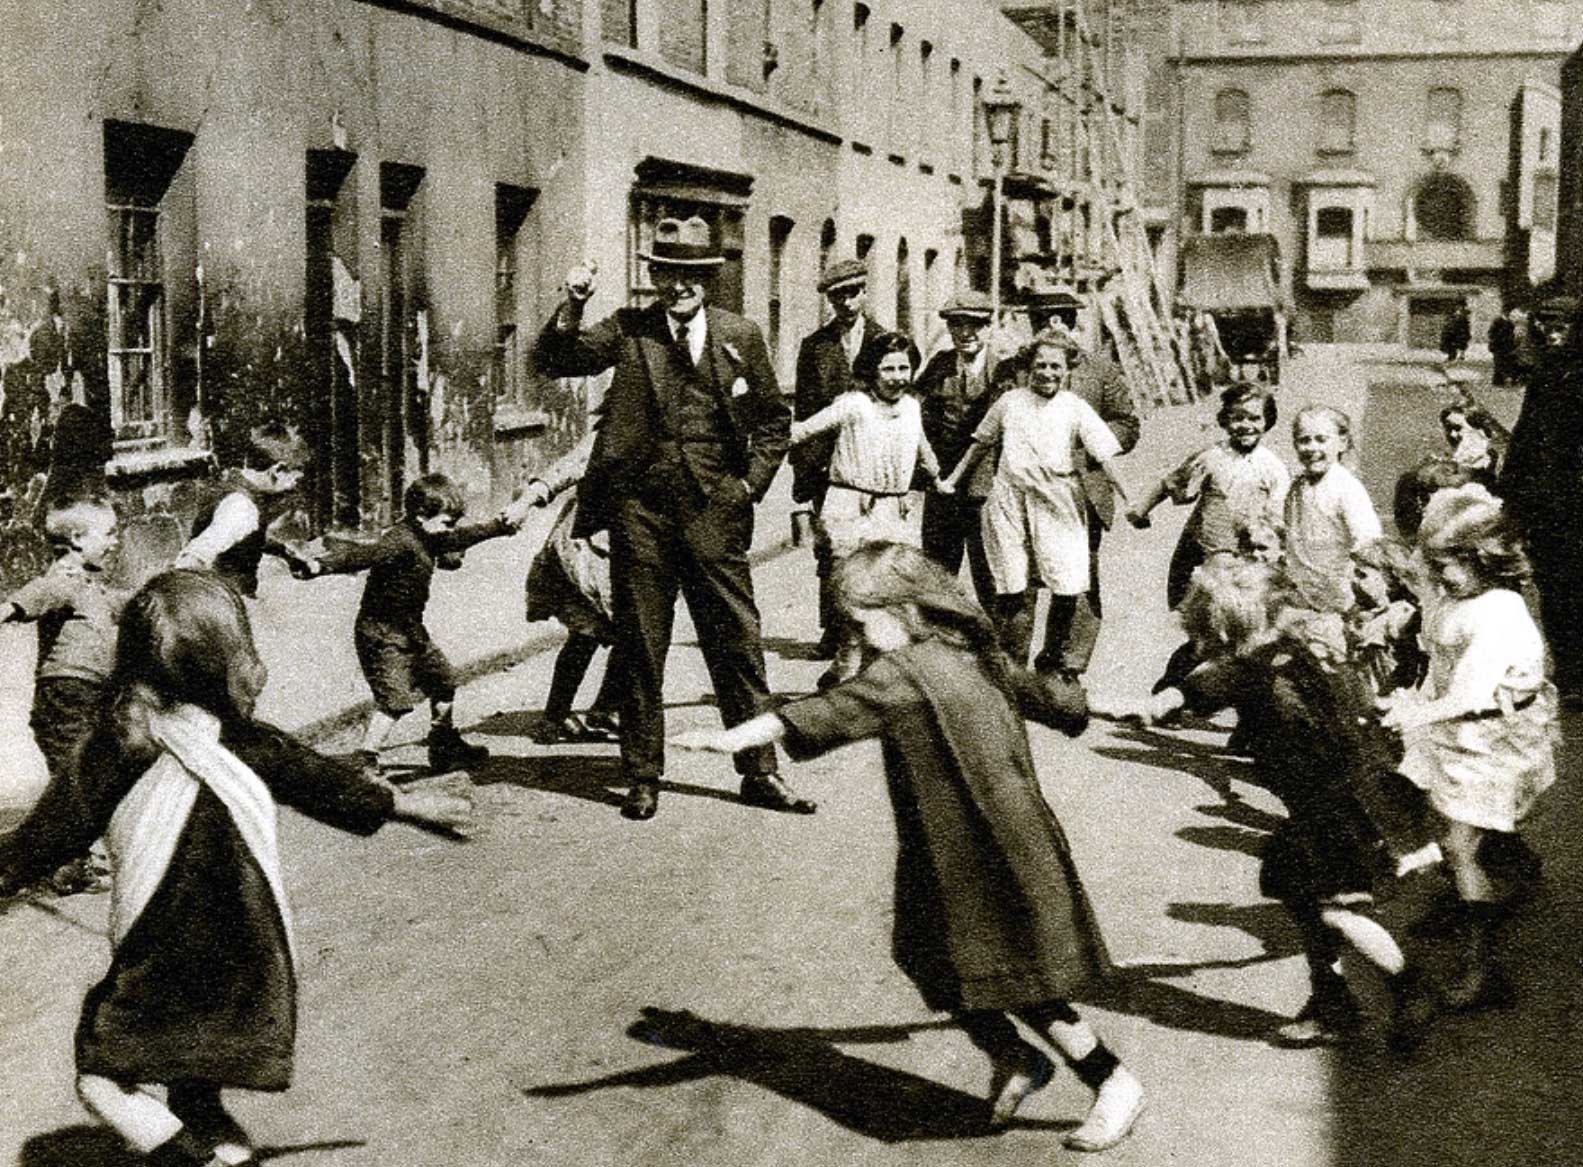 Children dance around a man in the street